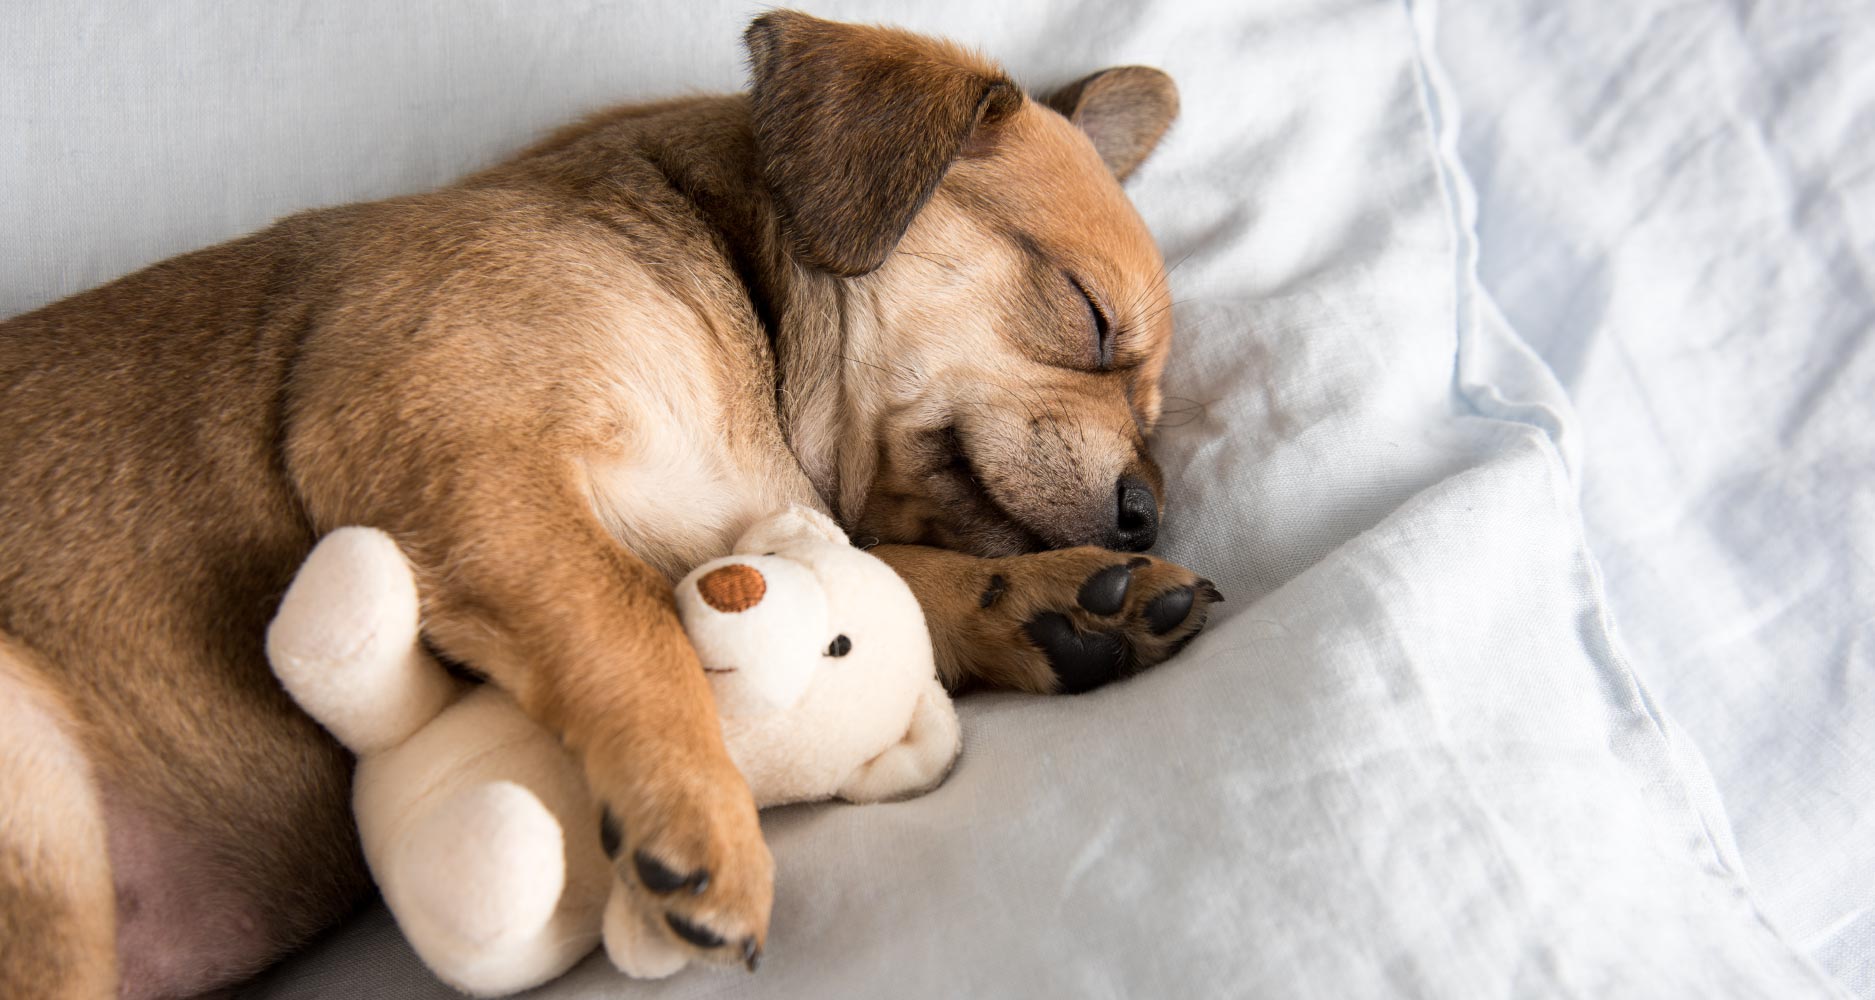 Where Should Your Dog Sleep? - PetlifeAU™